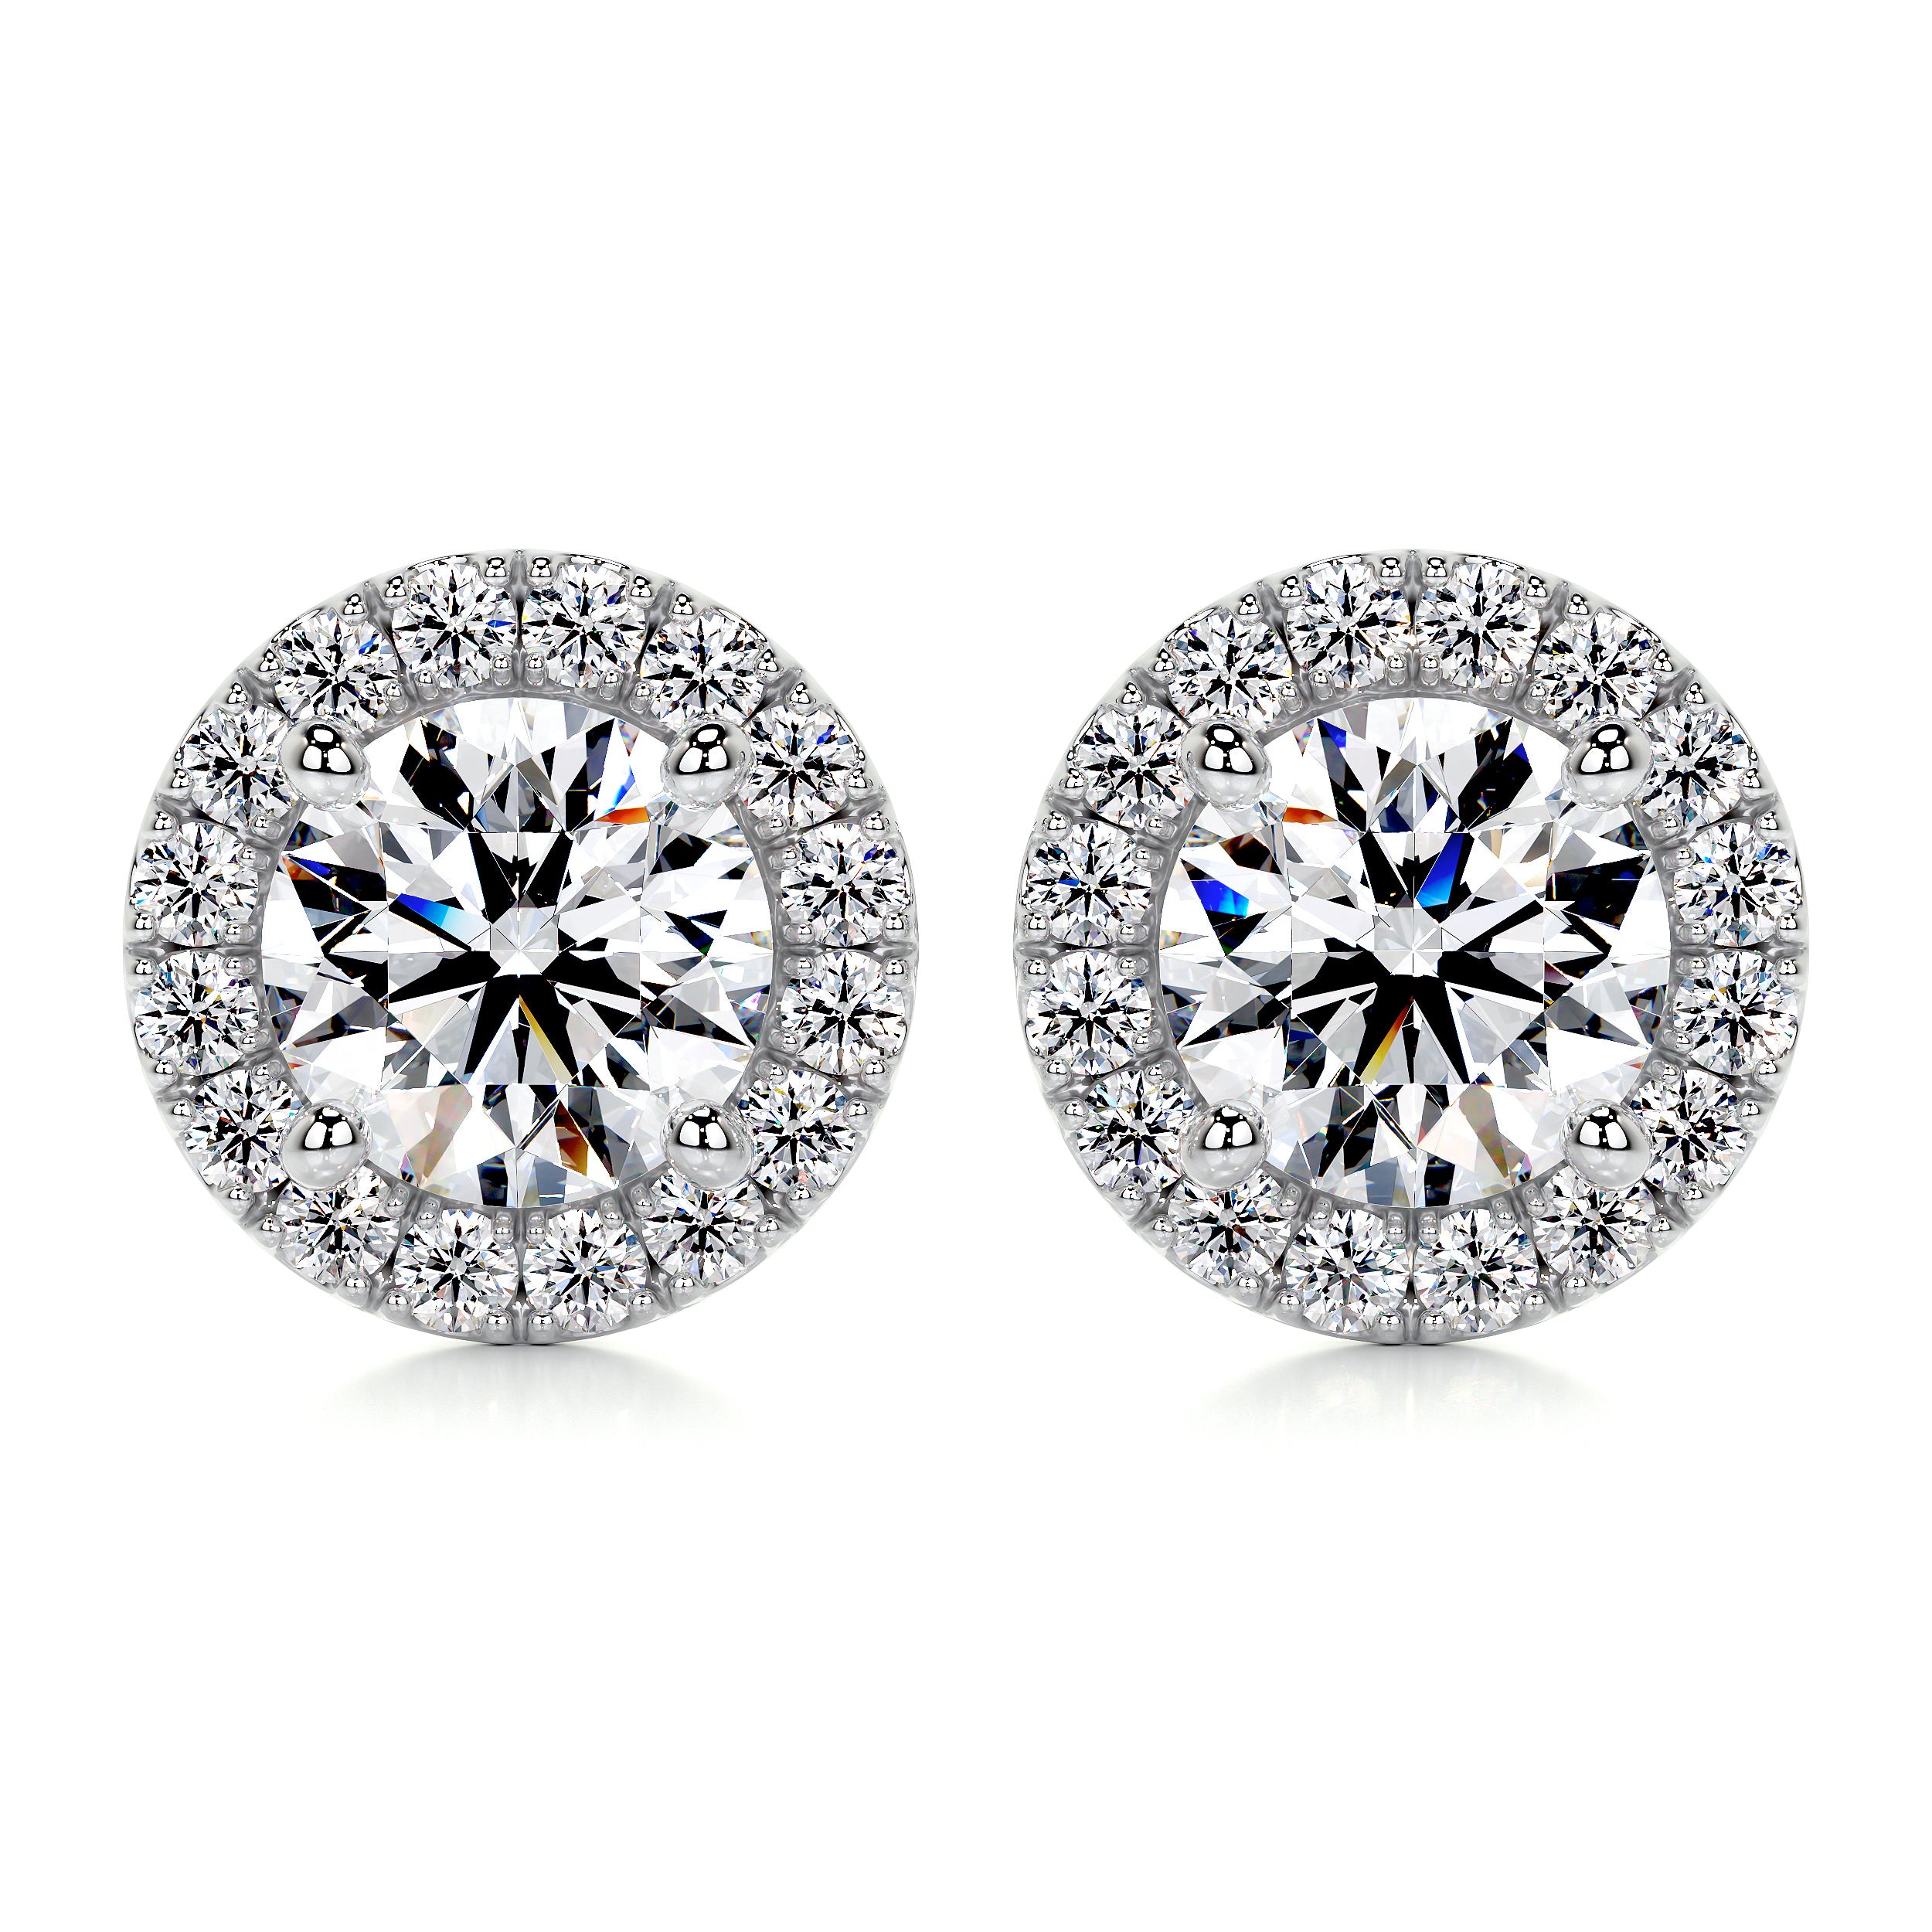 Erica Diamond Earrings   (1 Carat) -14K White Gold